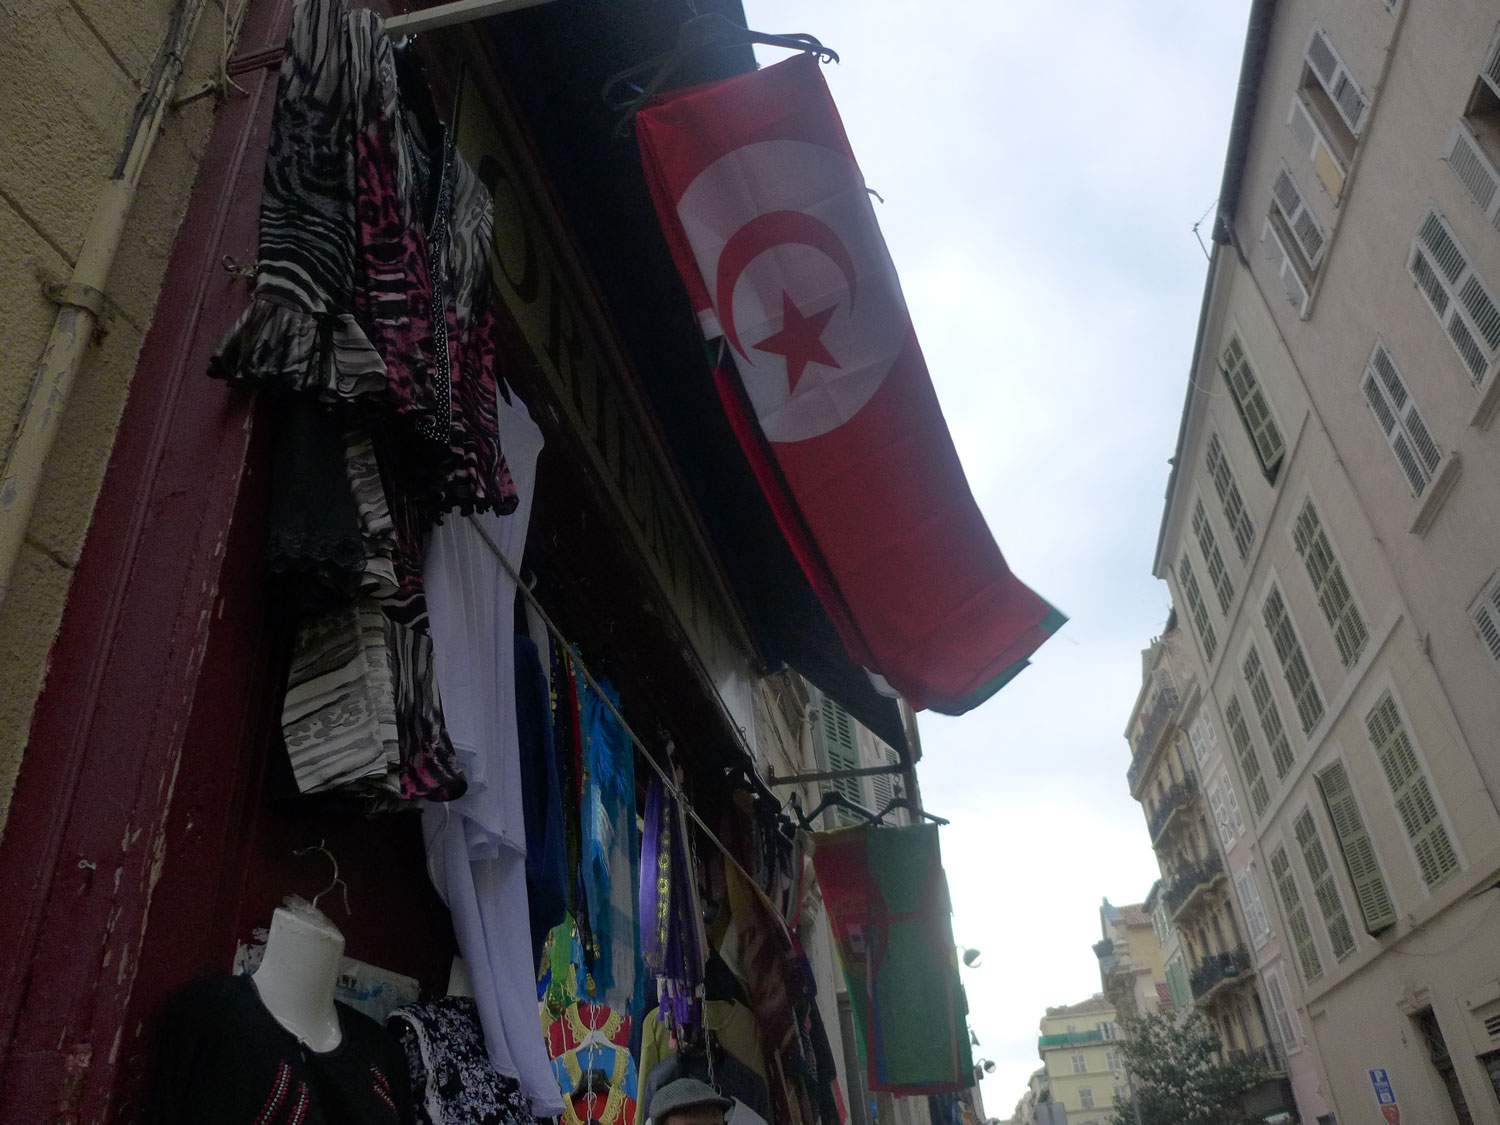 Un drapeau tunisien plane dans une ruelle.